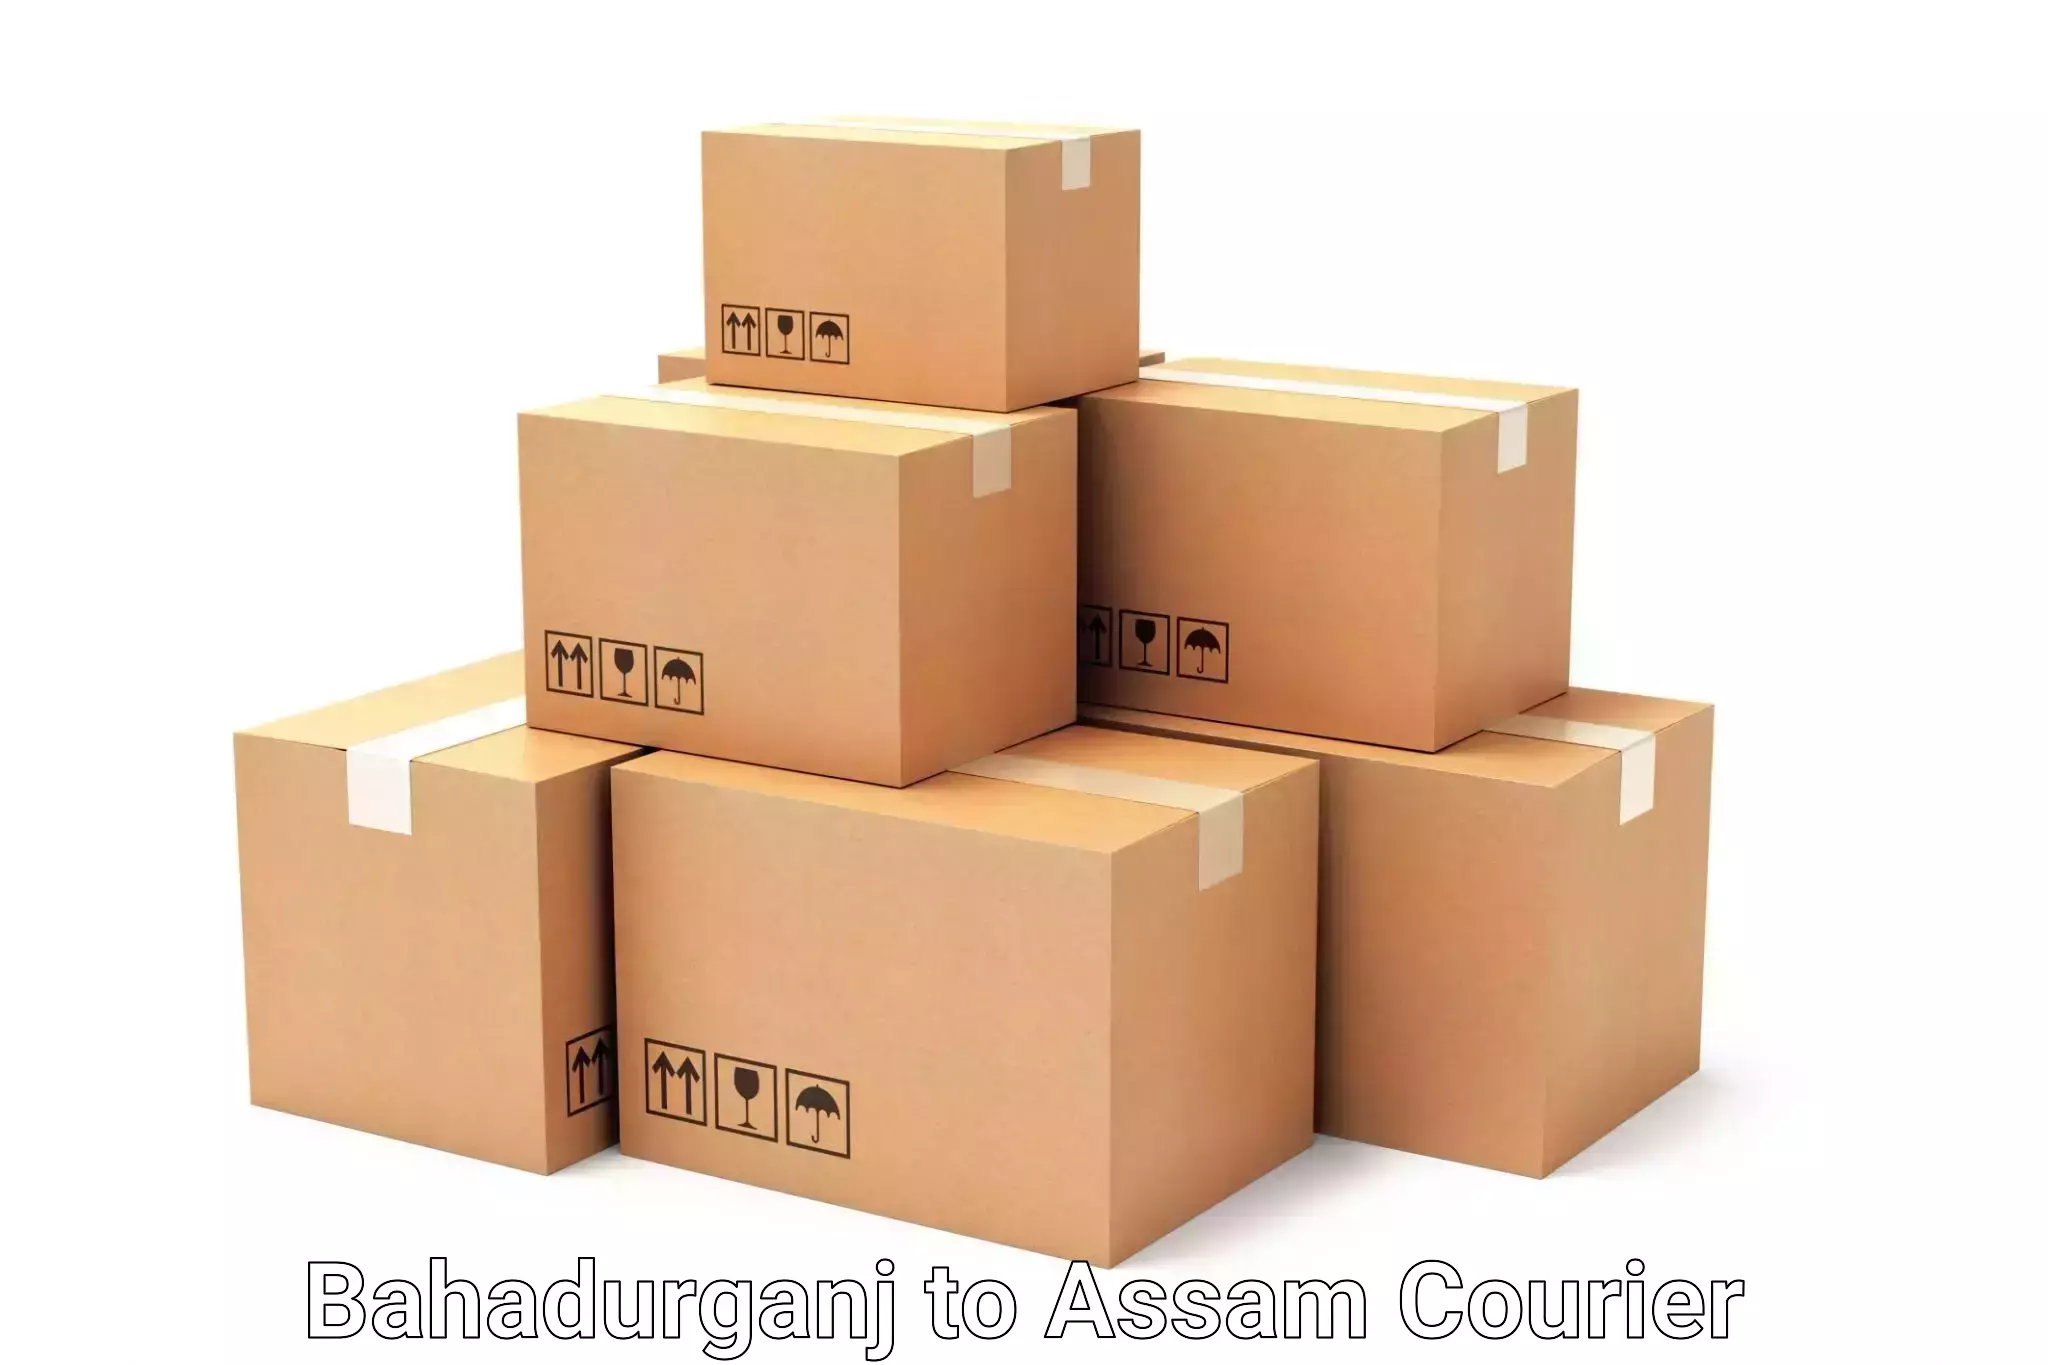 Personalized luggage shipping Bahadurganj to Baksha Bodoland